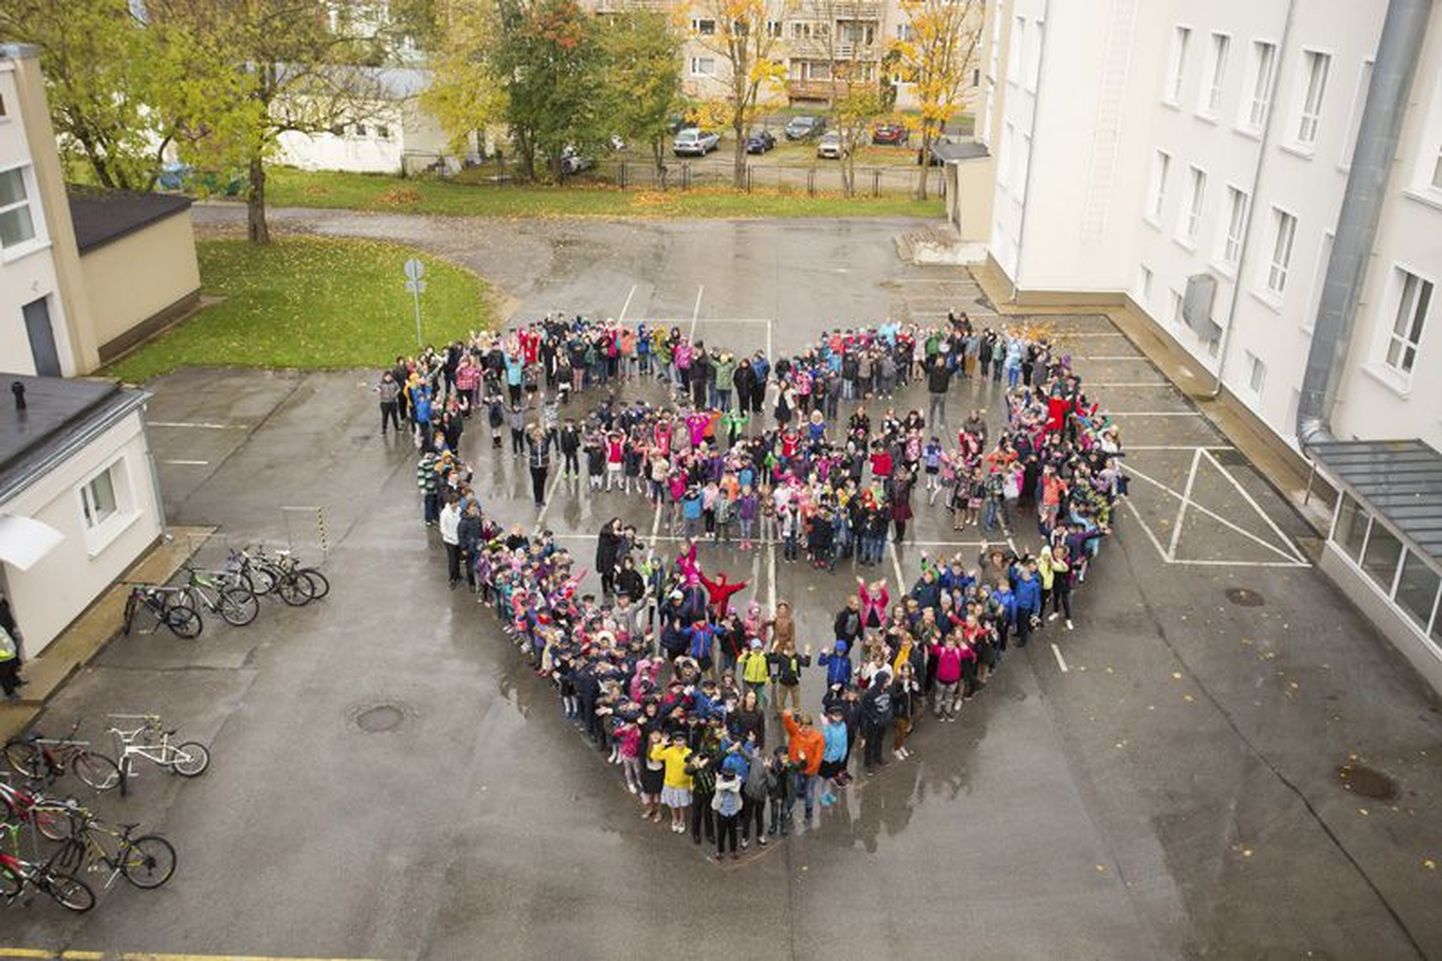 Rakvere gümnaasium tähistas eile 104. sünnipäeva. Pidupäeva puhul otsustasid gümnaasiumi Tallinna tänava hoone õpilased teha ühispildi. Külm tuul ja ladisev vihmavesi kooliperet ei seganud ja pilt sai koerailmale vaatamata siiski õues tehtud.